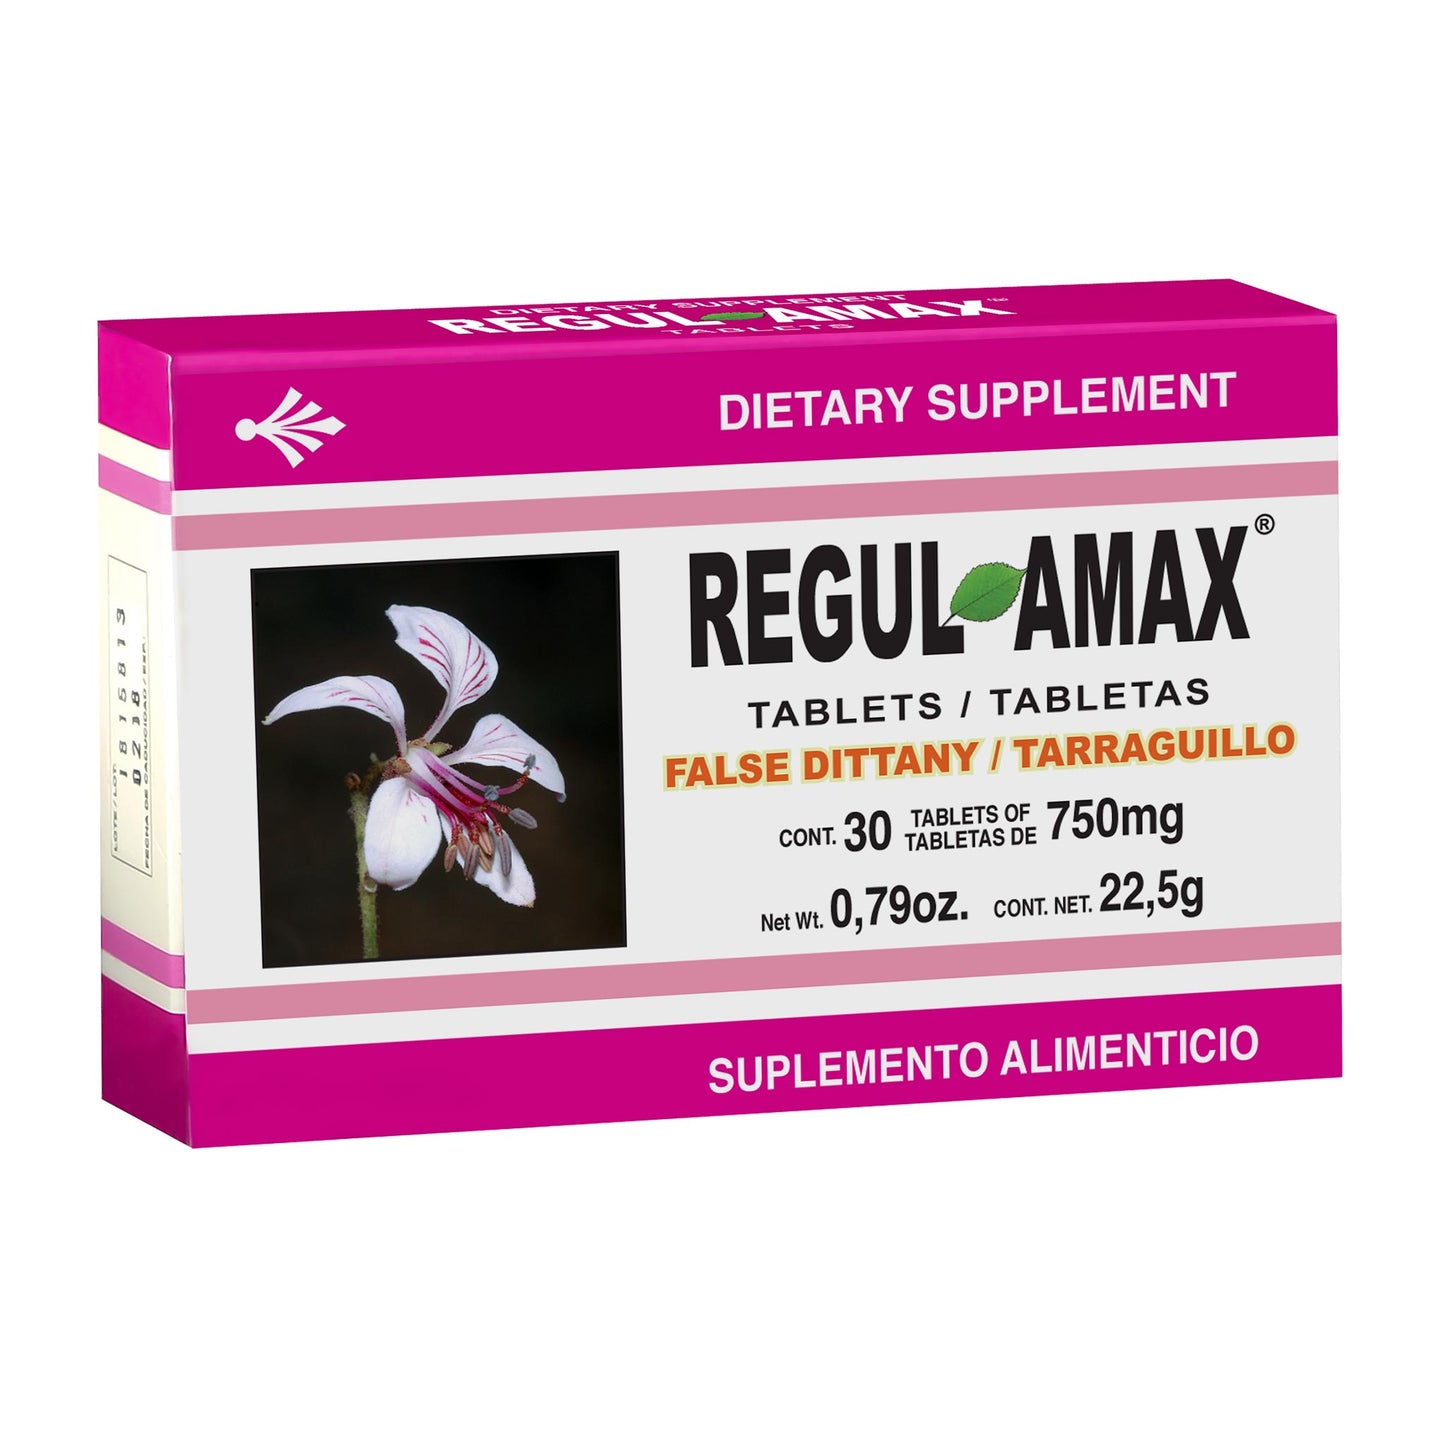 REGULAMAX ® 30 tabletas